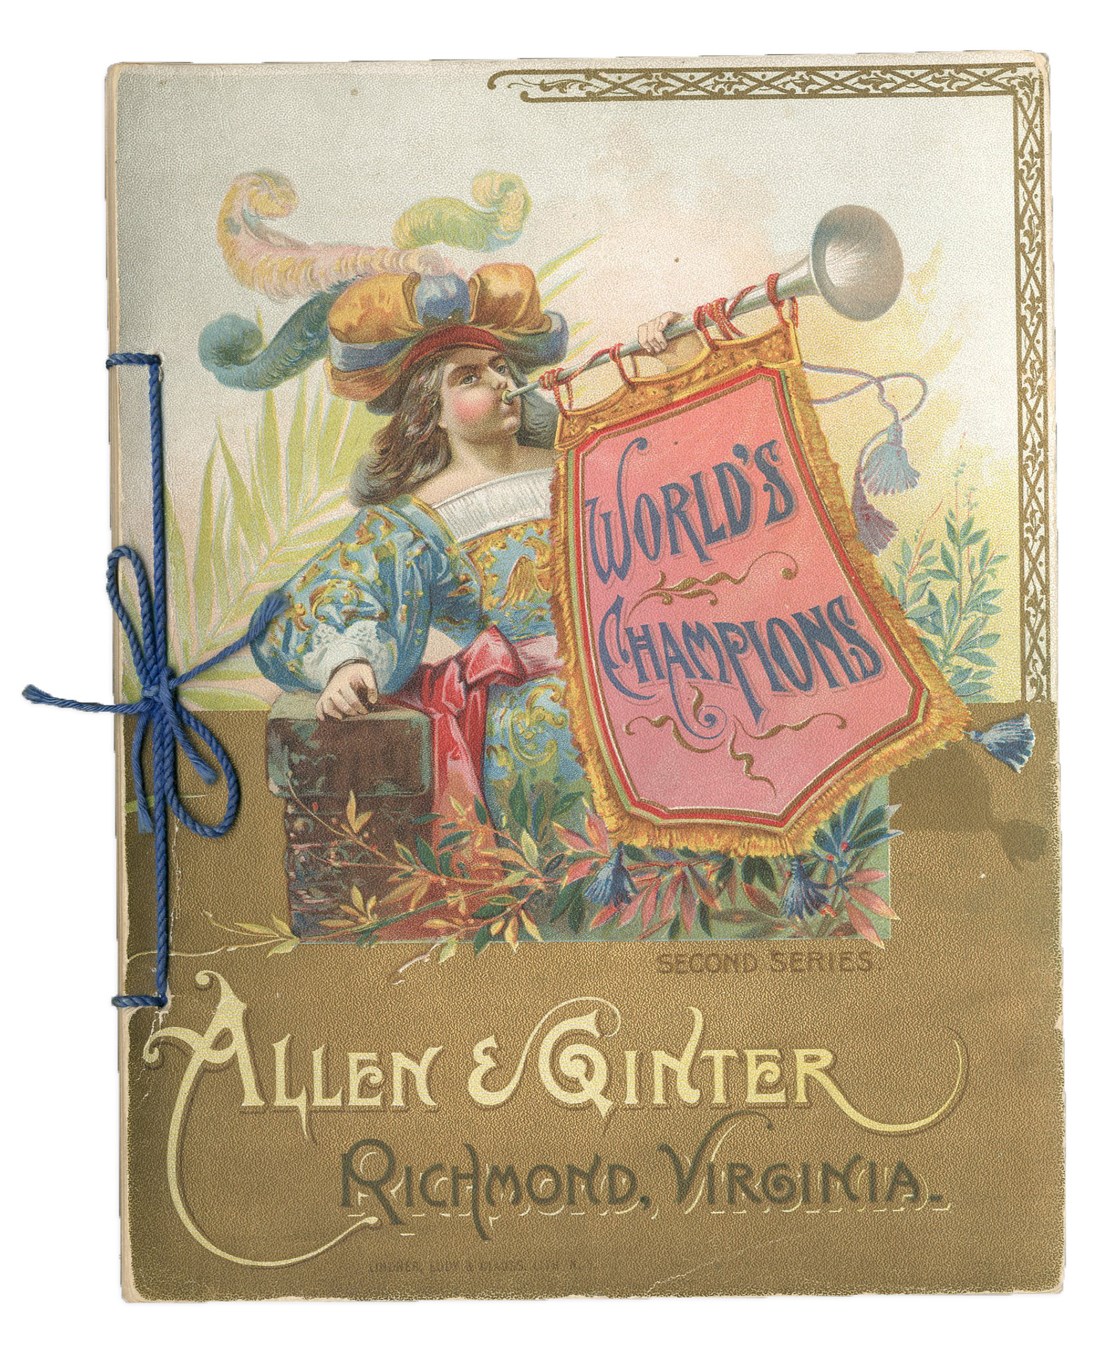 - 1888 Allen & Ginter World's Champions Second Series Album